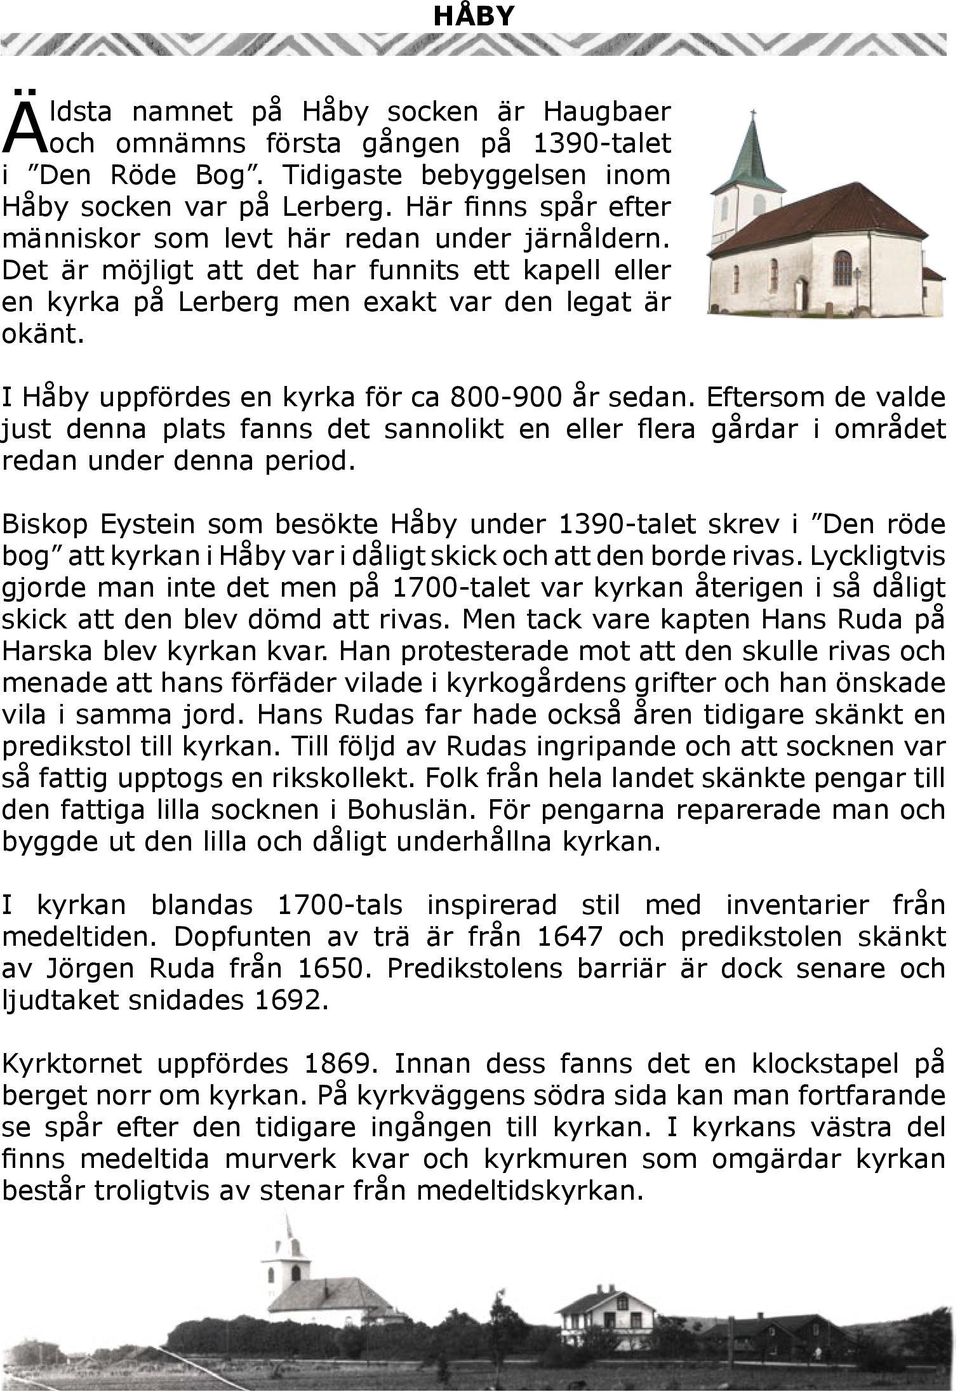 I Håby uppfördes en kyrka för ca 800-900 år sedan. Eftersom de valde just denna plats fanns det sannolikt en eller flera gårdar i området redan under denna period.